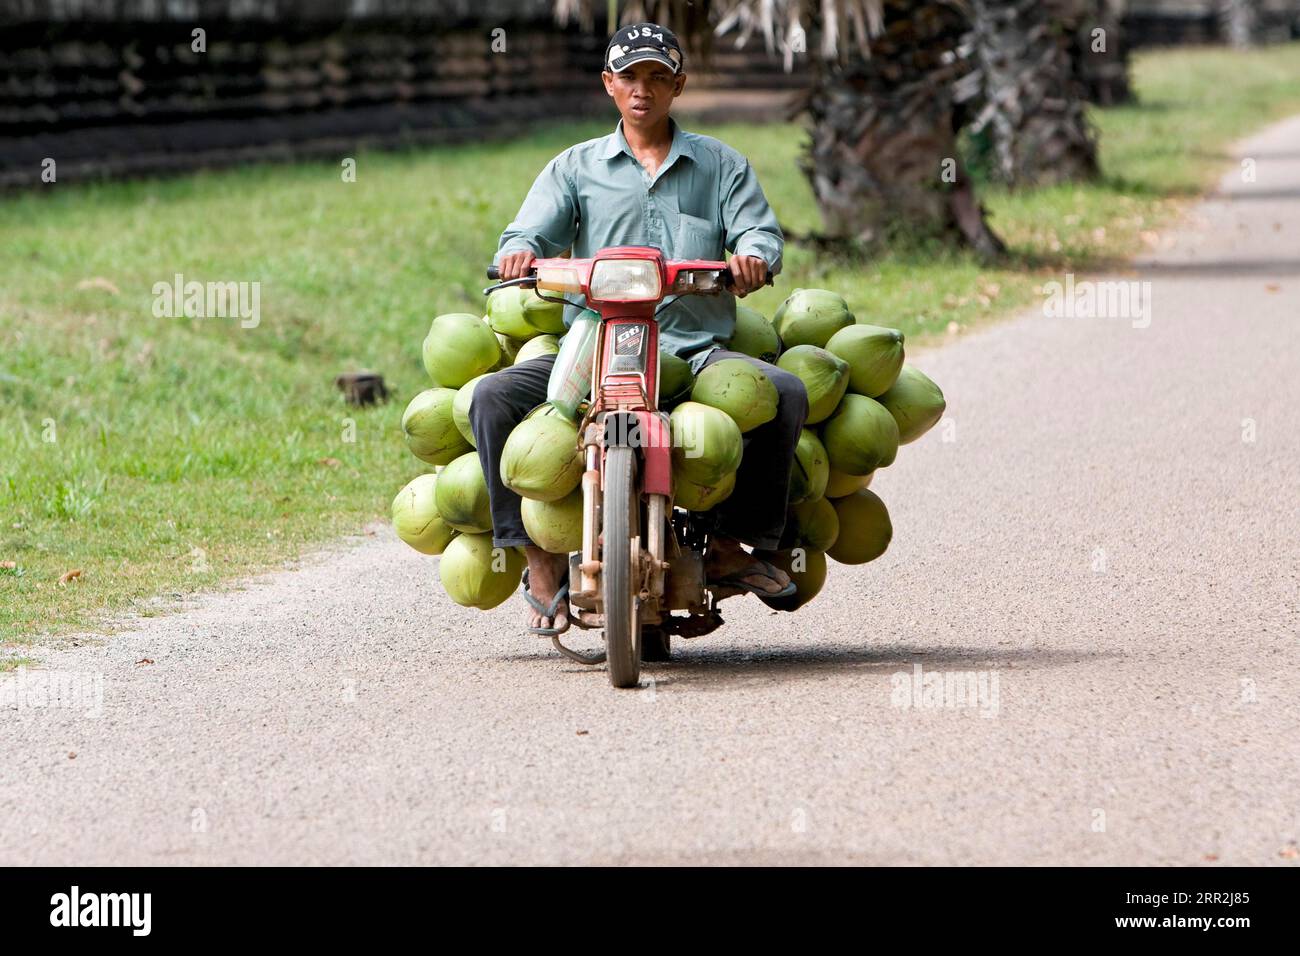 Mann auf Moped, der frische Kokosnüsse transportiert, Kambodscha, Südostasien Stockfoto